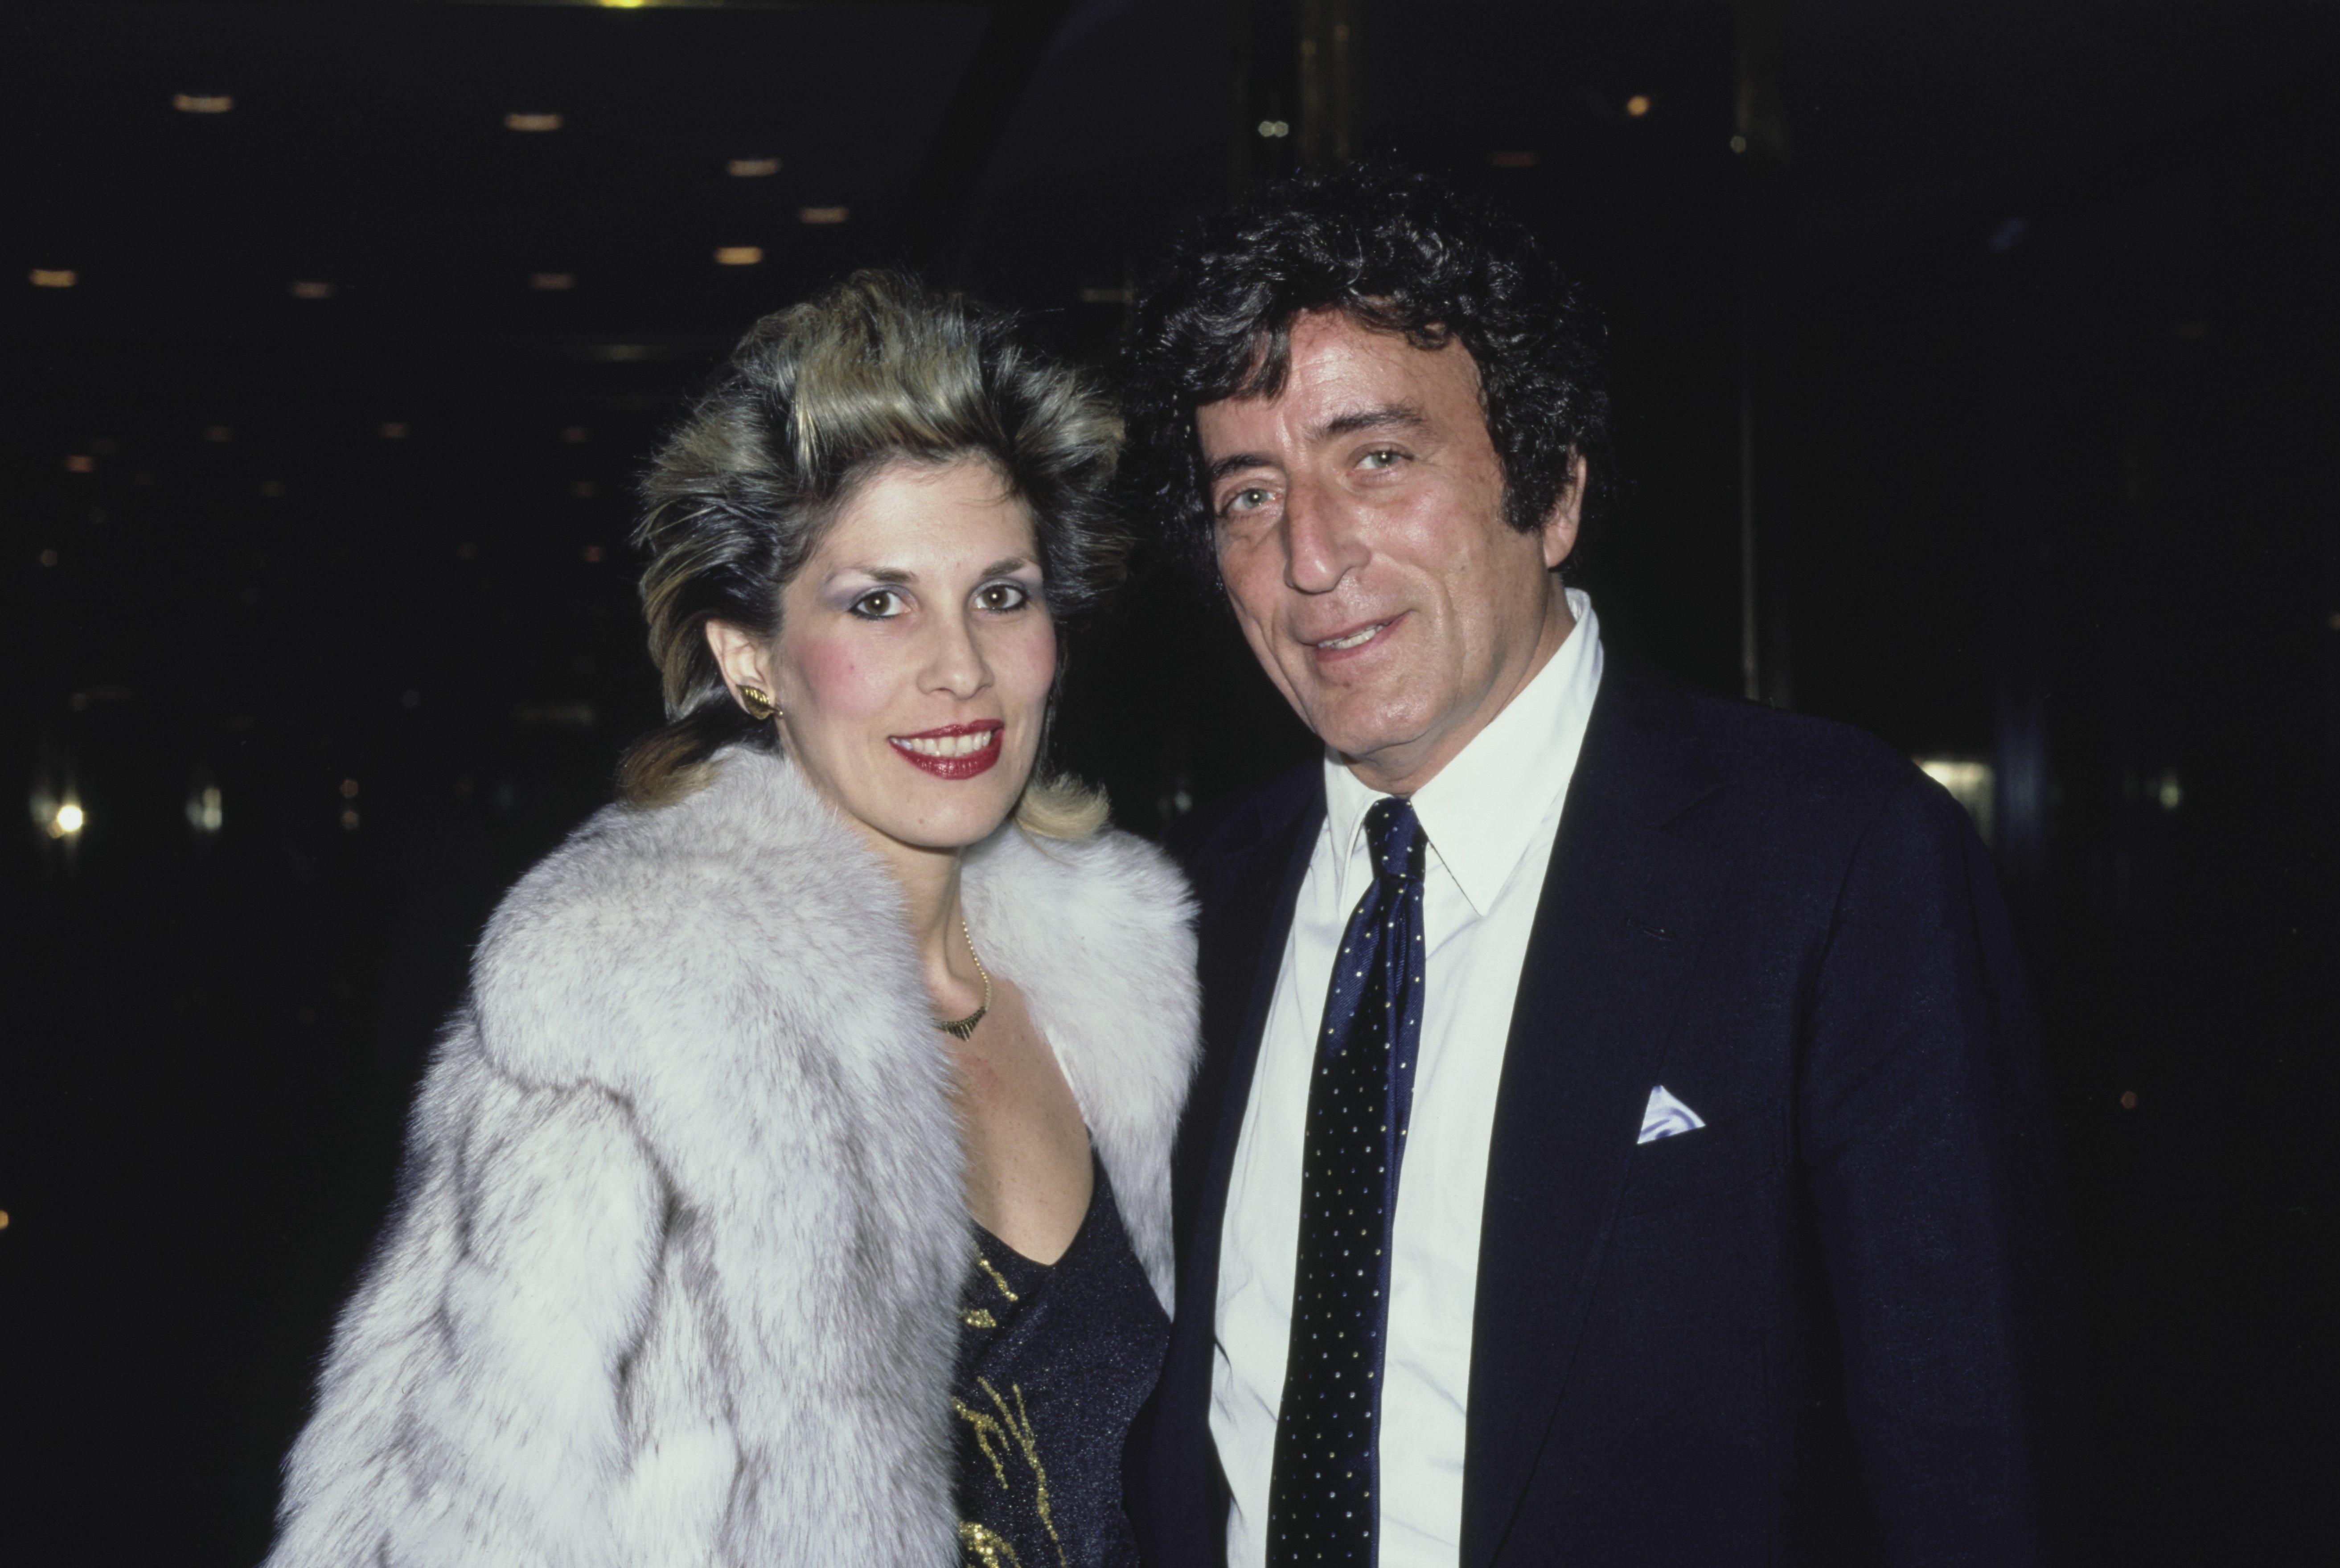 Sandra Grant Bennett and Tony Bennett in 1980. | Source: Getty Images